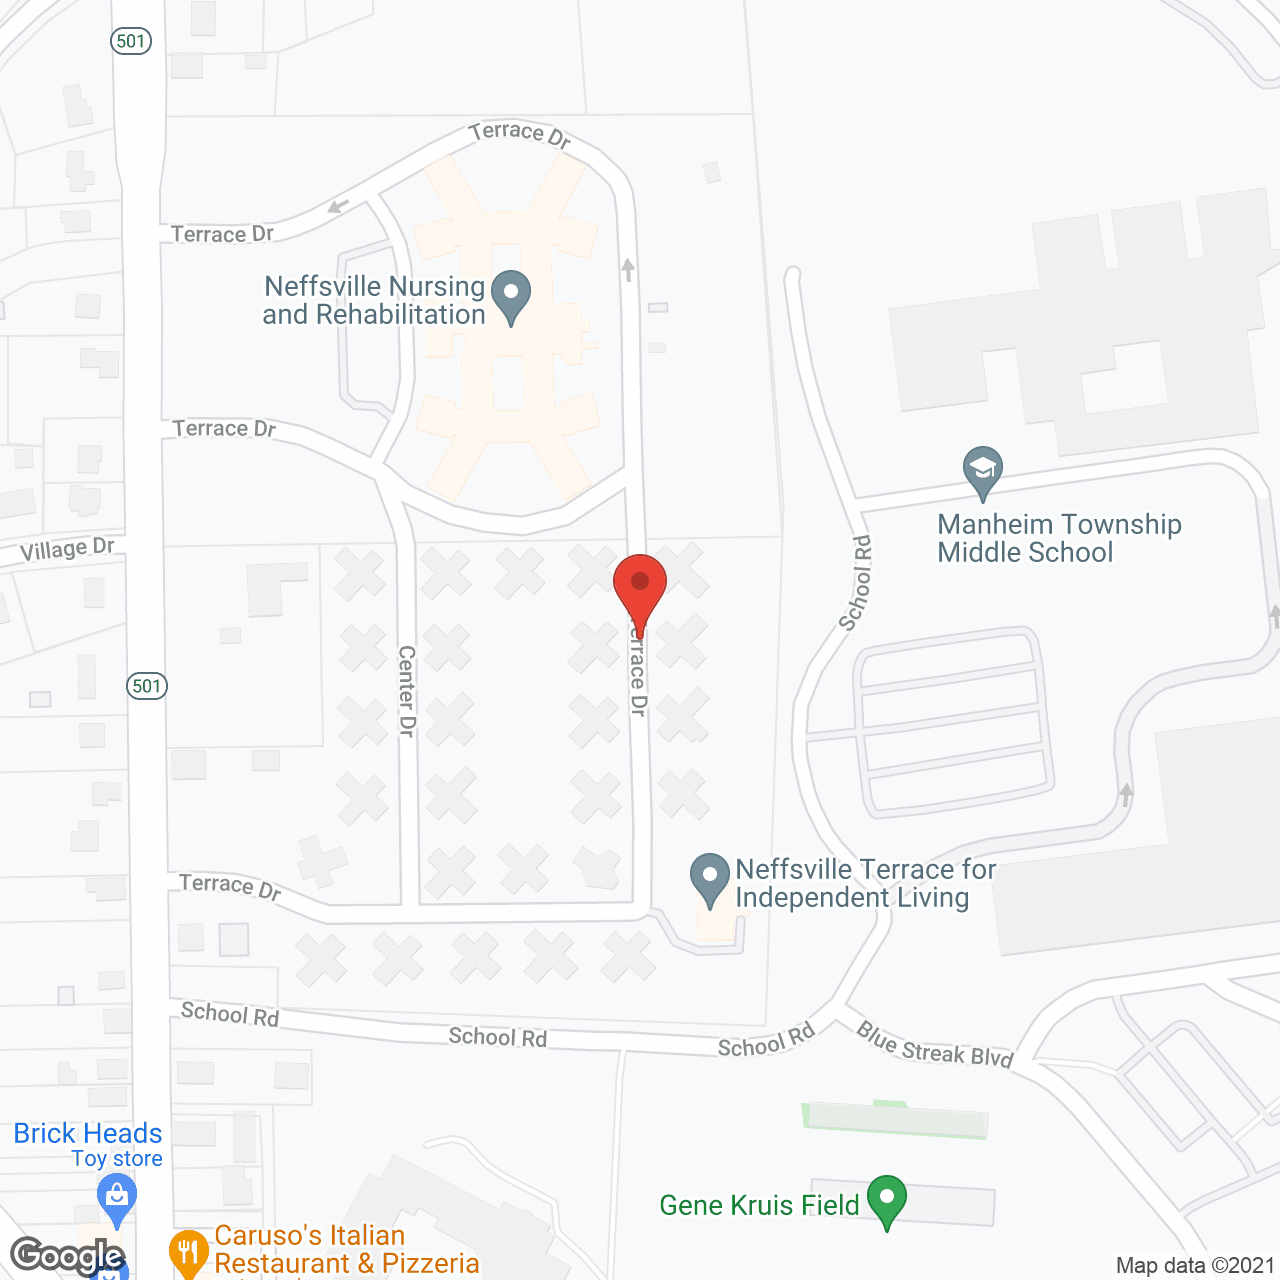 Neffsville Terrace in google map